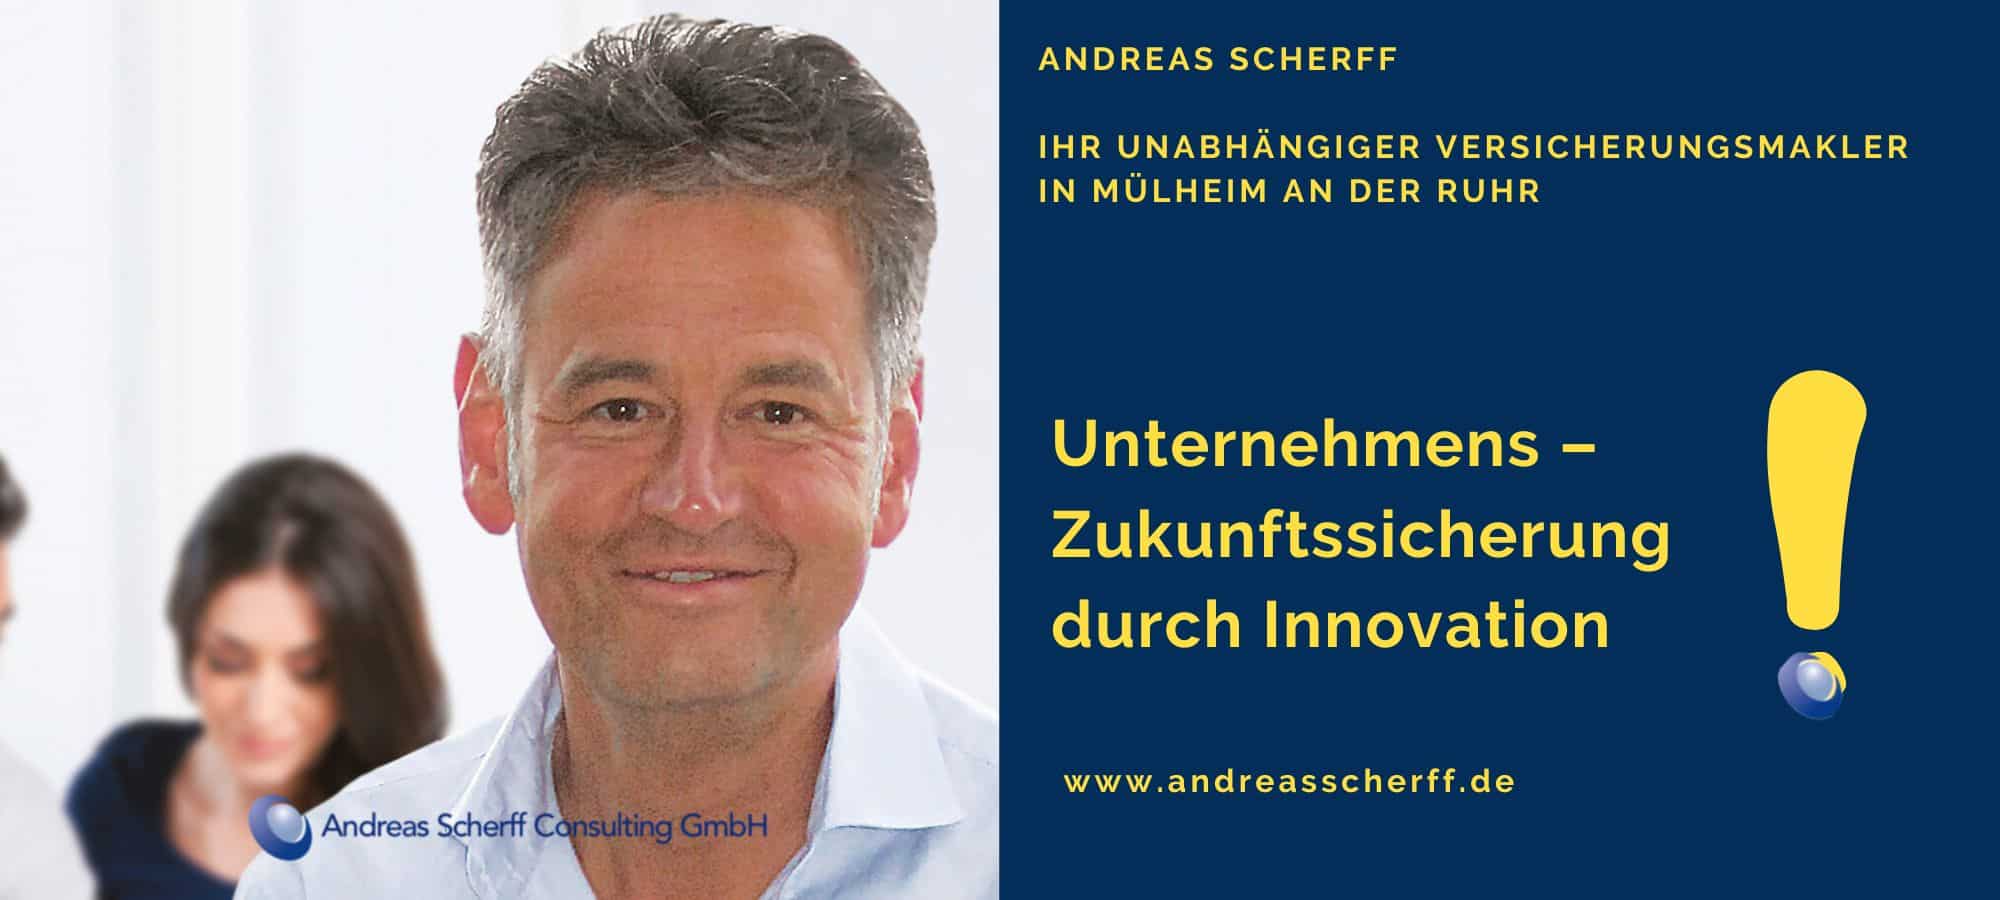 Andreas Scherff - Unternehmens-Zukunftssicherheit